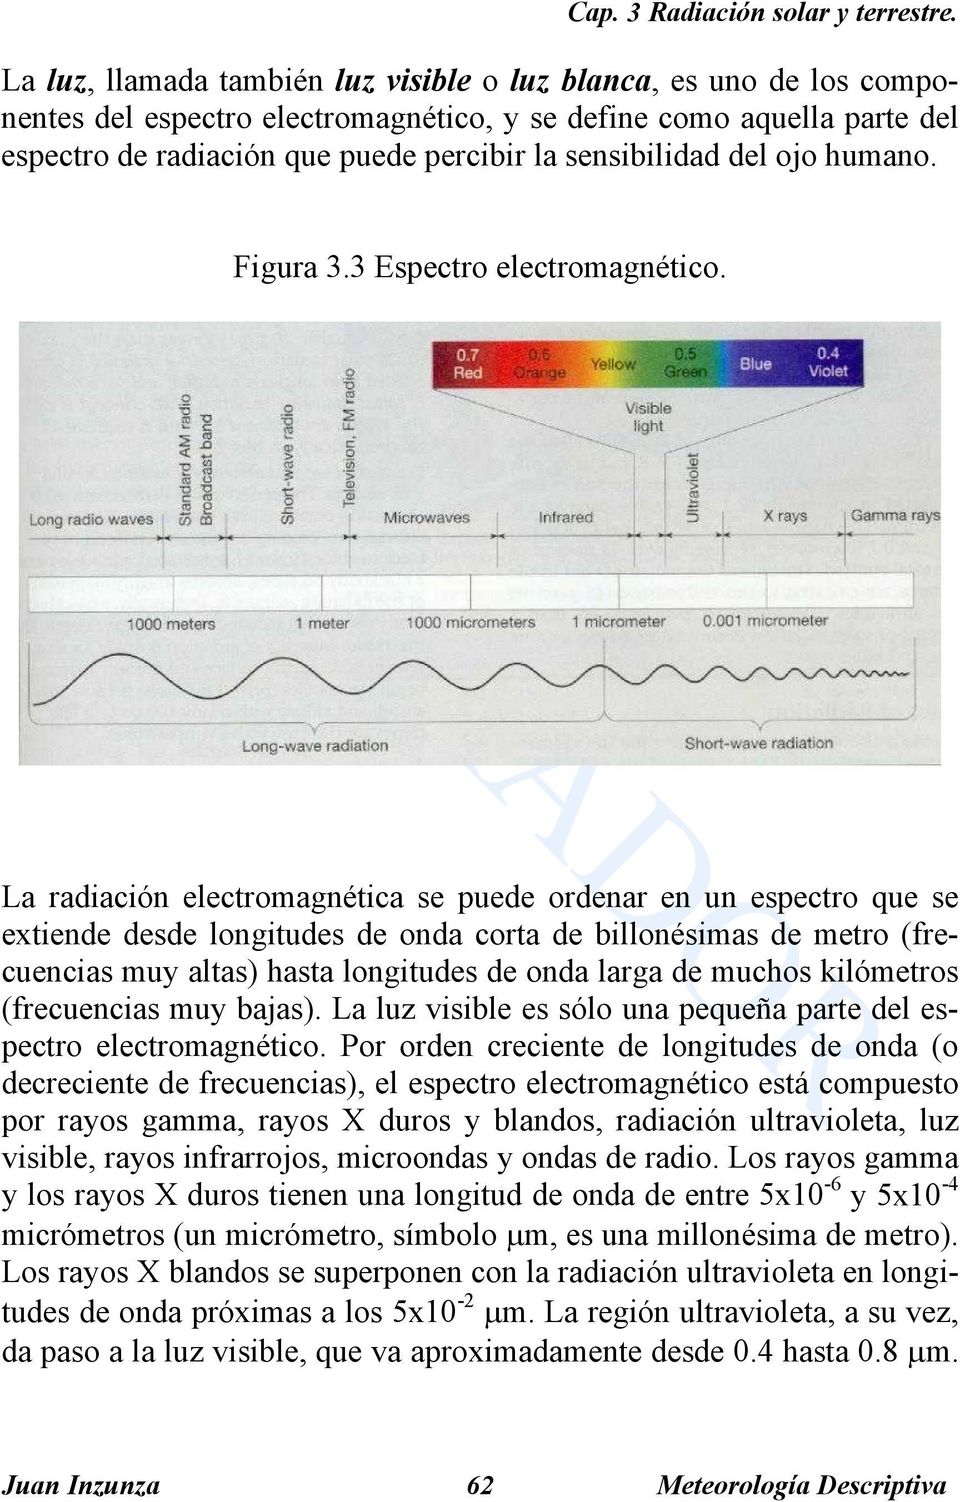 La radiación electromagnética se puede ordenar en un espectro que se extiende desde longitudes de onda corta de billonésimas de metro (frecuencias muy altas) hasta longitudes de onda larga de muchos